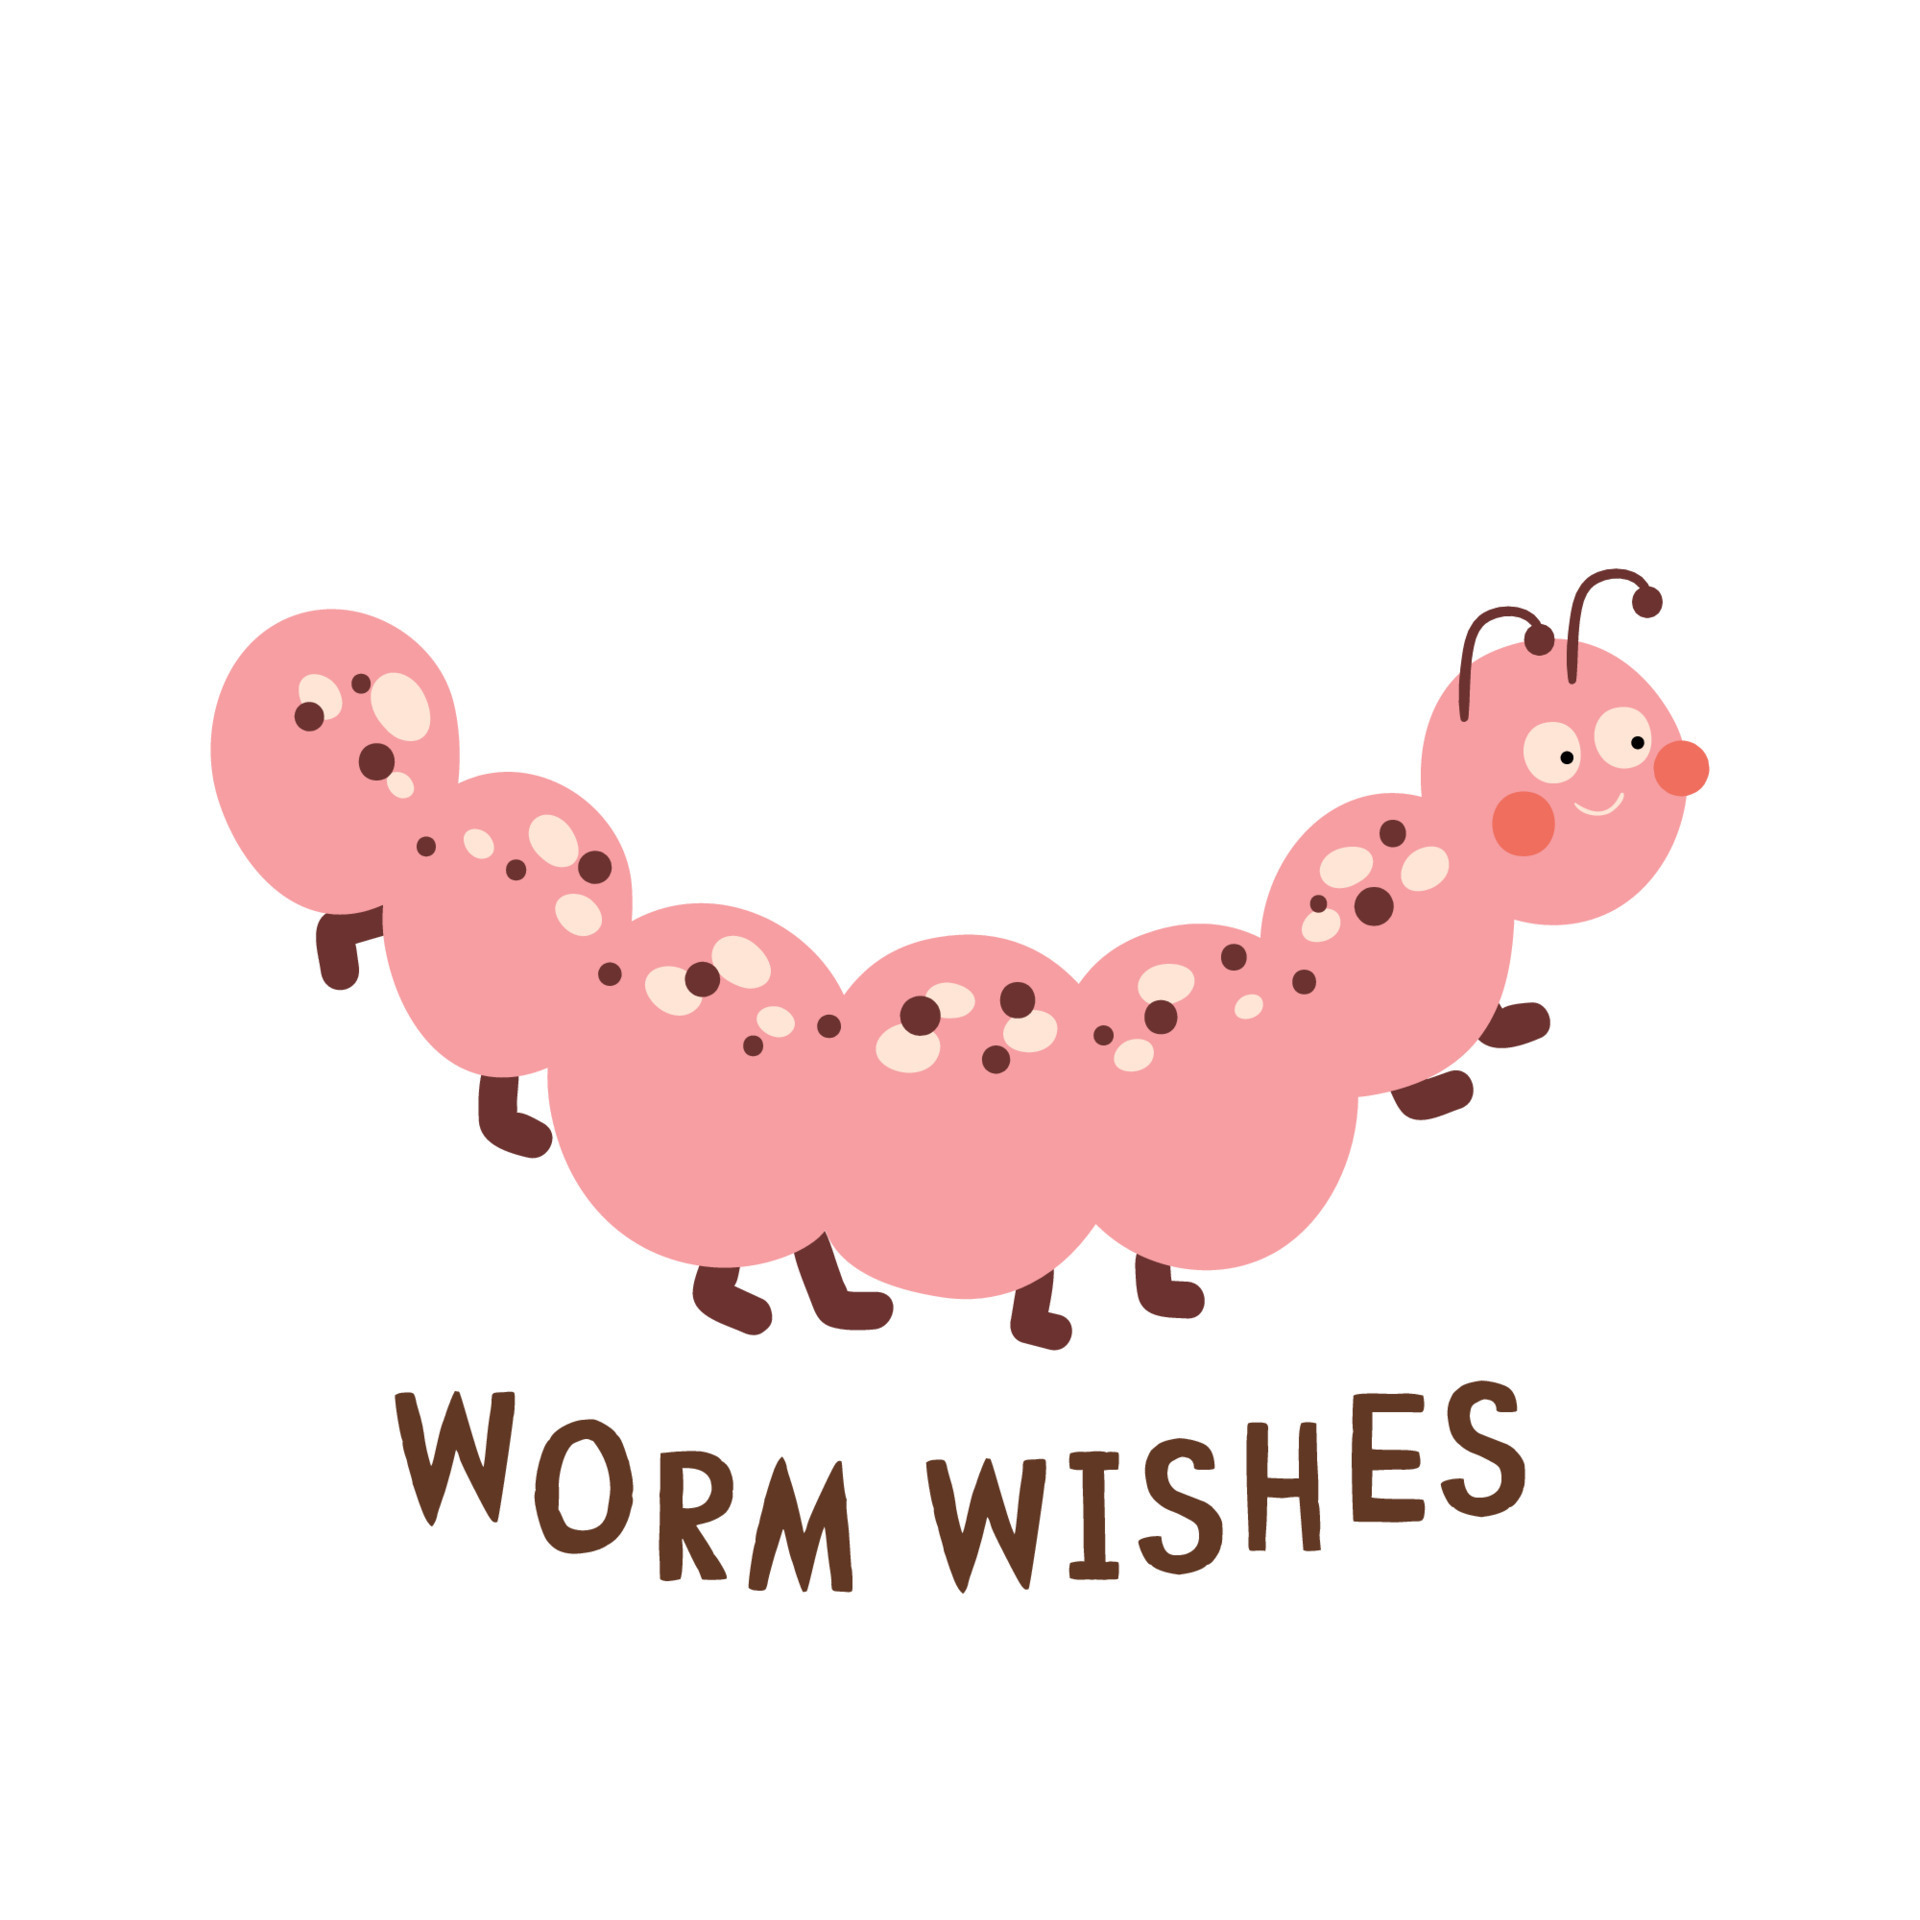 Congratulations, Worm